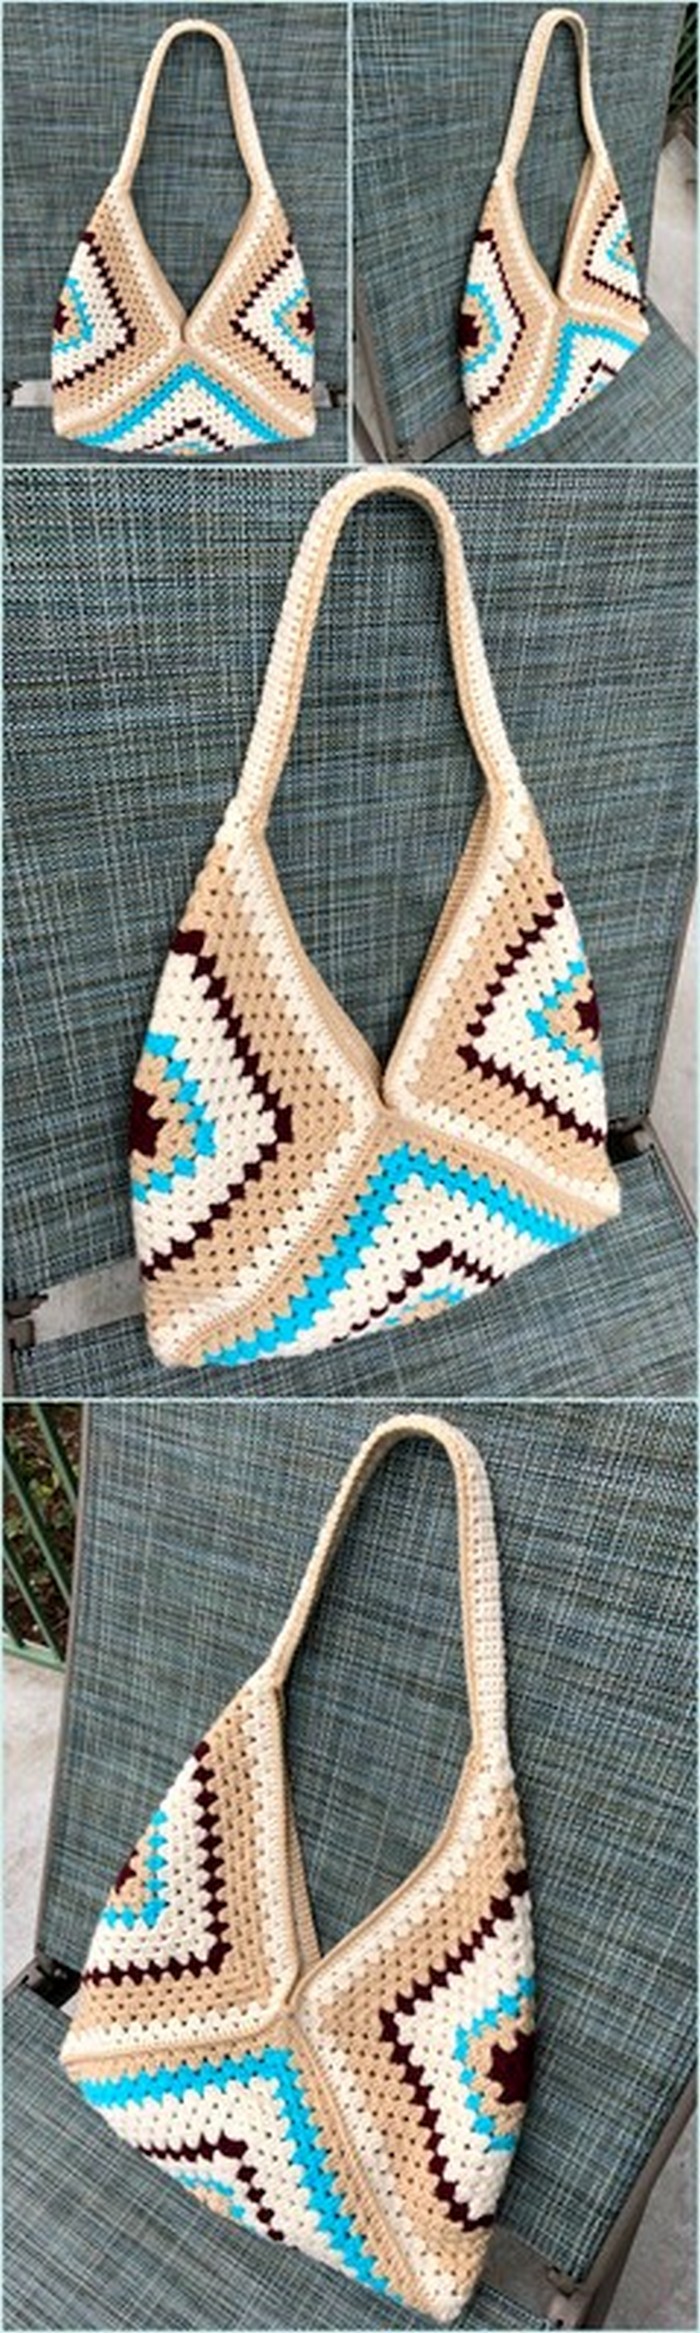 lovely crochet bag for girls 